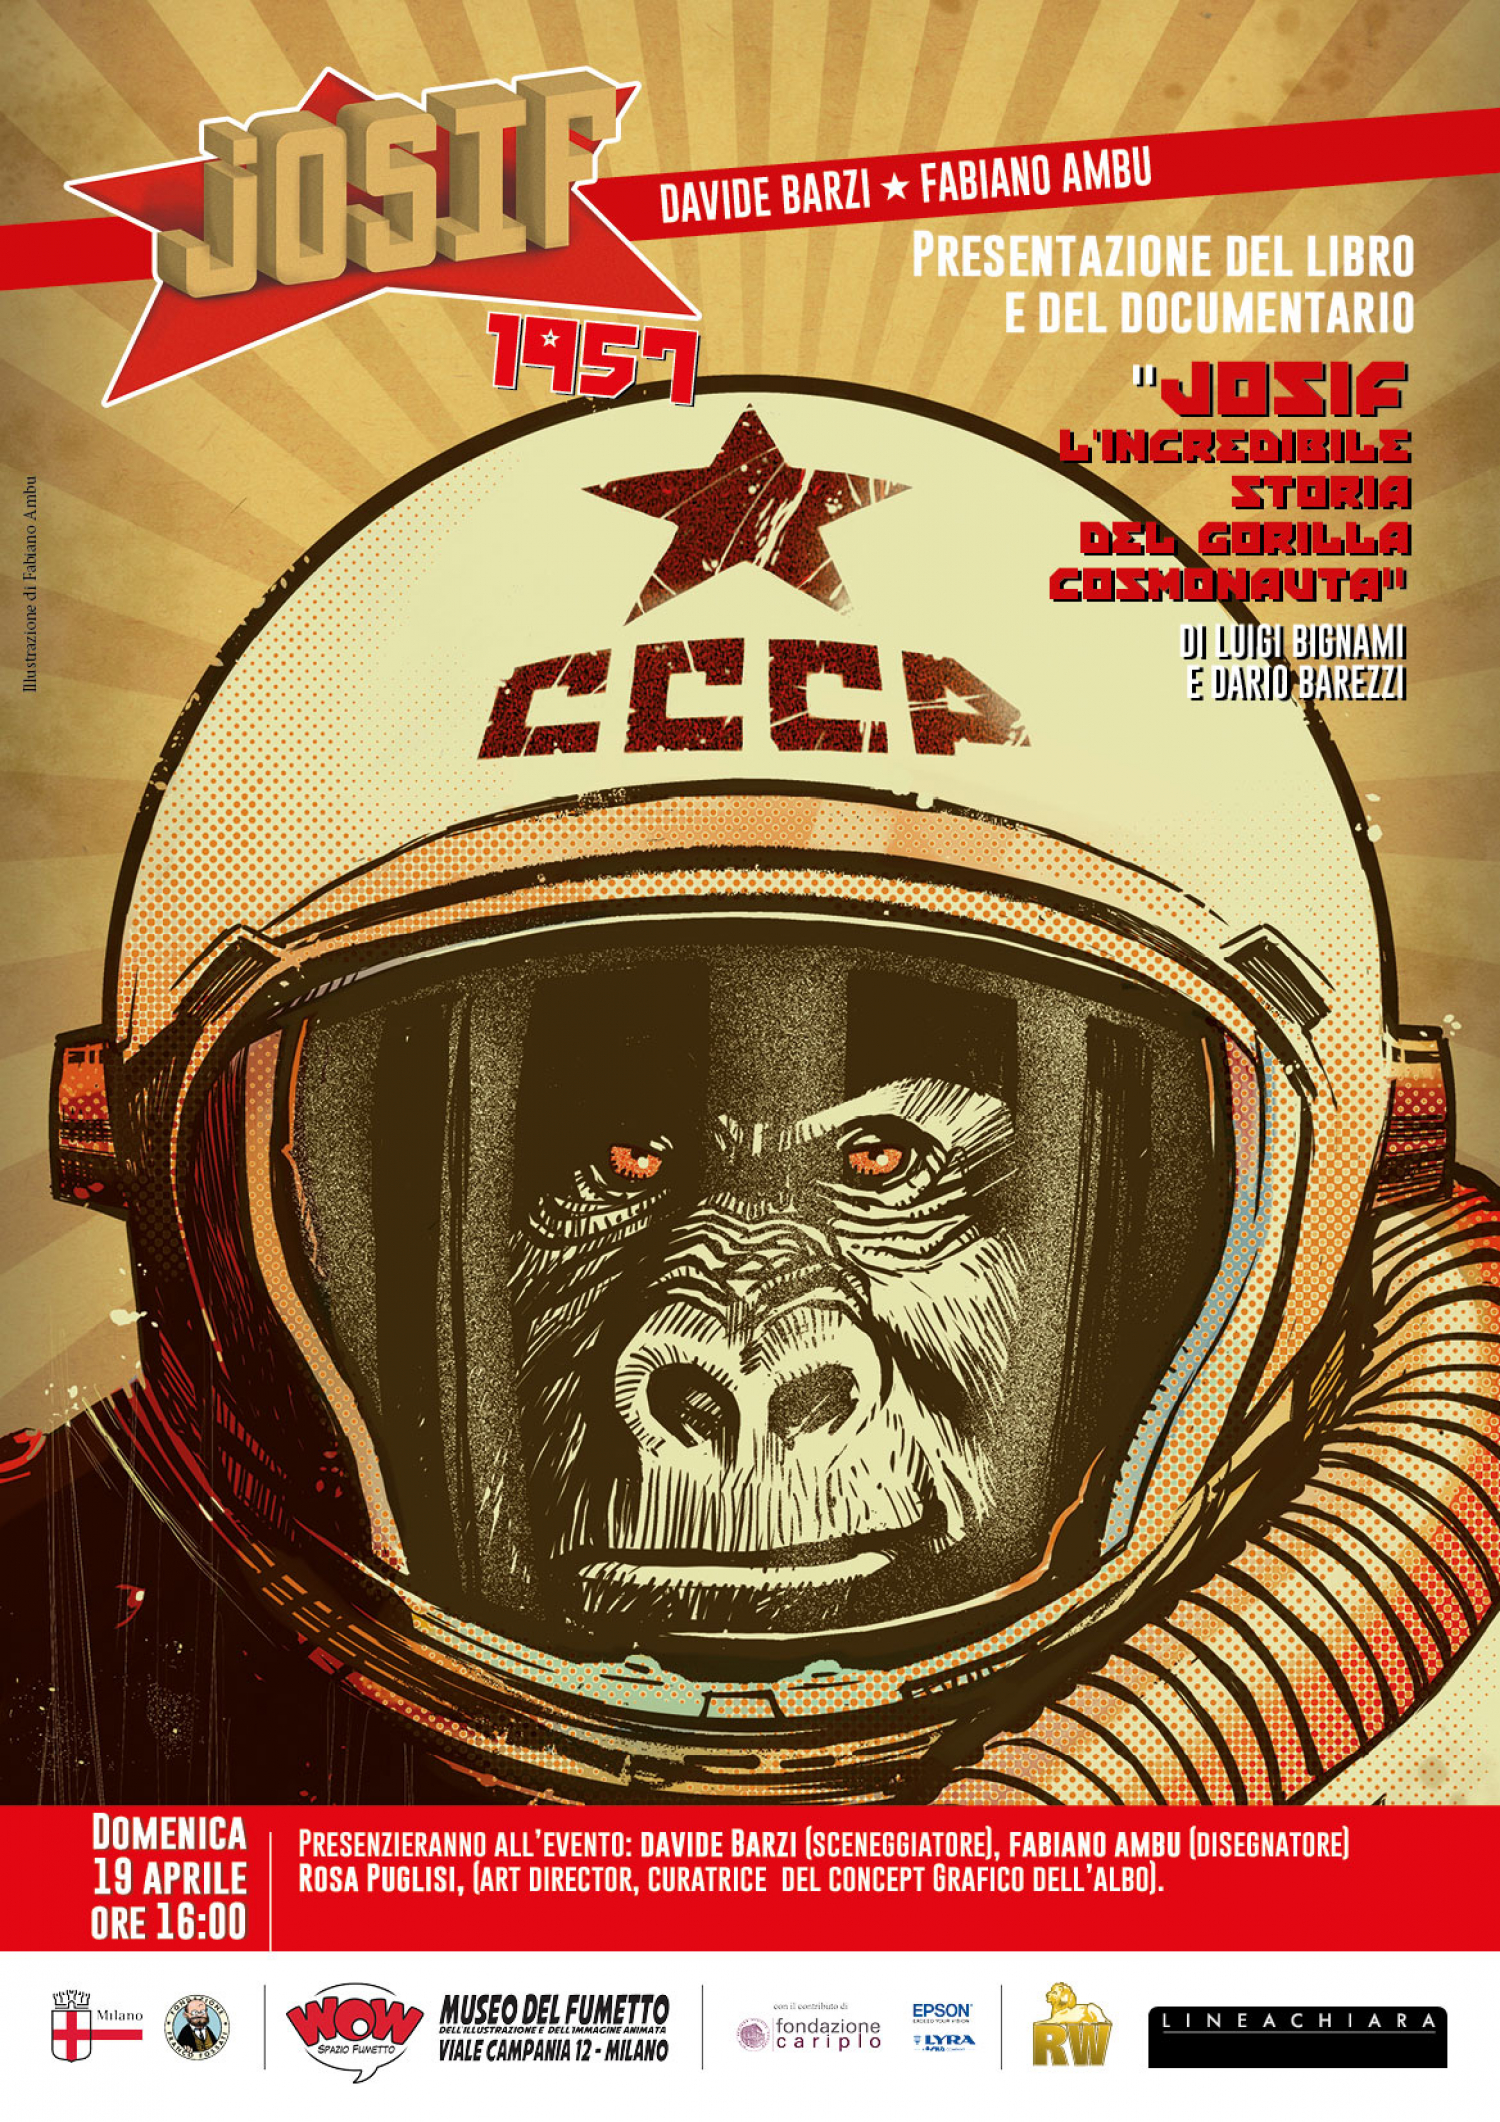 <p>Mentre &egrave; in corso<a href="http://www.museowow.it/wow/it/avengers-il-mito/"> la mostra&nbsp;sugli Avengers</a>, simboli dello stile americano, WOW Spazio Fumetto e RW &ndash; Lineachiara presentano al mondo la vera storia di Josif, il gorilla cosmonauta sovietico. Lanciato in segreto nello spazio nel 1957, solo di recente i fumettisti Davide Barzi, Fabiano Ambu e Rosa Puglisi ne hanno ricostruito la vicenda, e si tratta di avvenimenti che hanno dell&#39;incredibile, e che racconteranno al pubblico sabato 19 aprile a partire dalle ore 16:00. Al termine dell&#39;incontro gli autori saranno disponibili per dediche, autografi e sketch.</p>